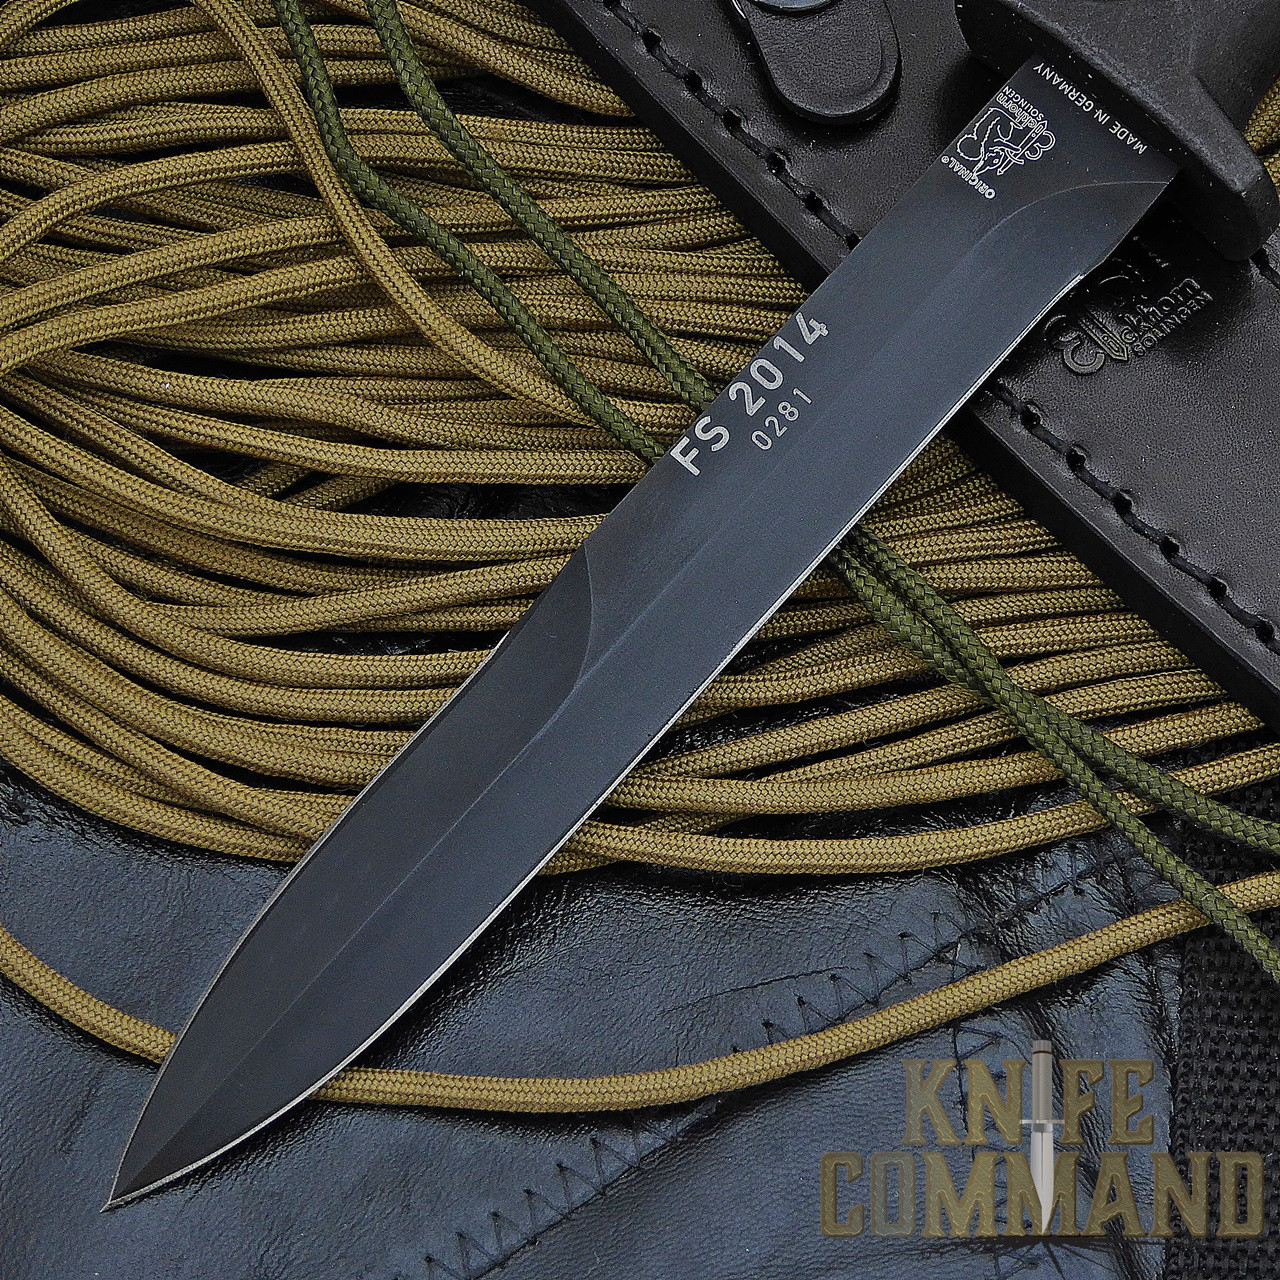 Eickhorn Solingen FS2014 Combat Dagger.  Double edged blade.